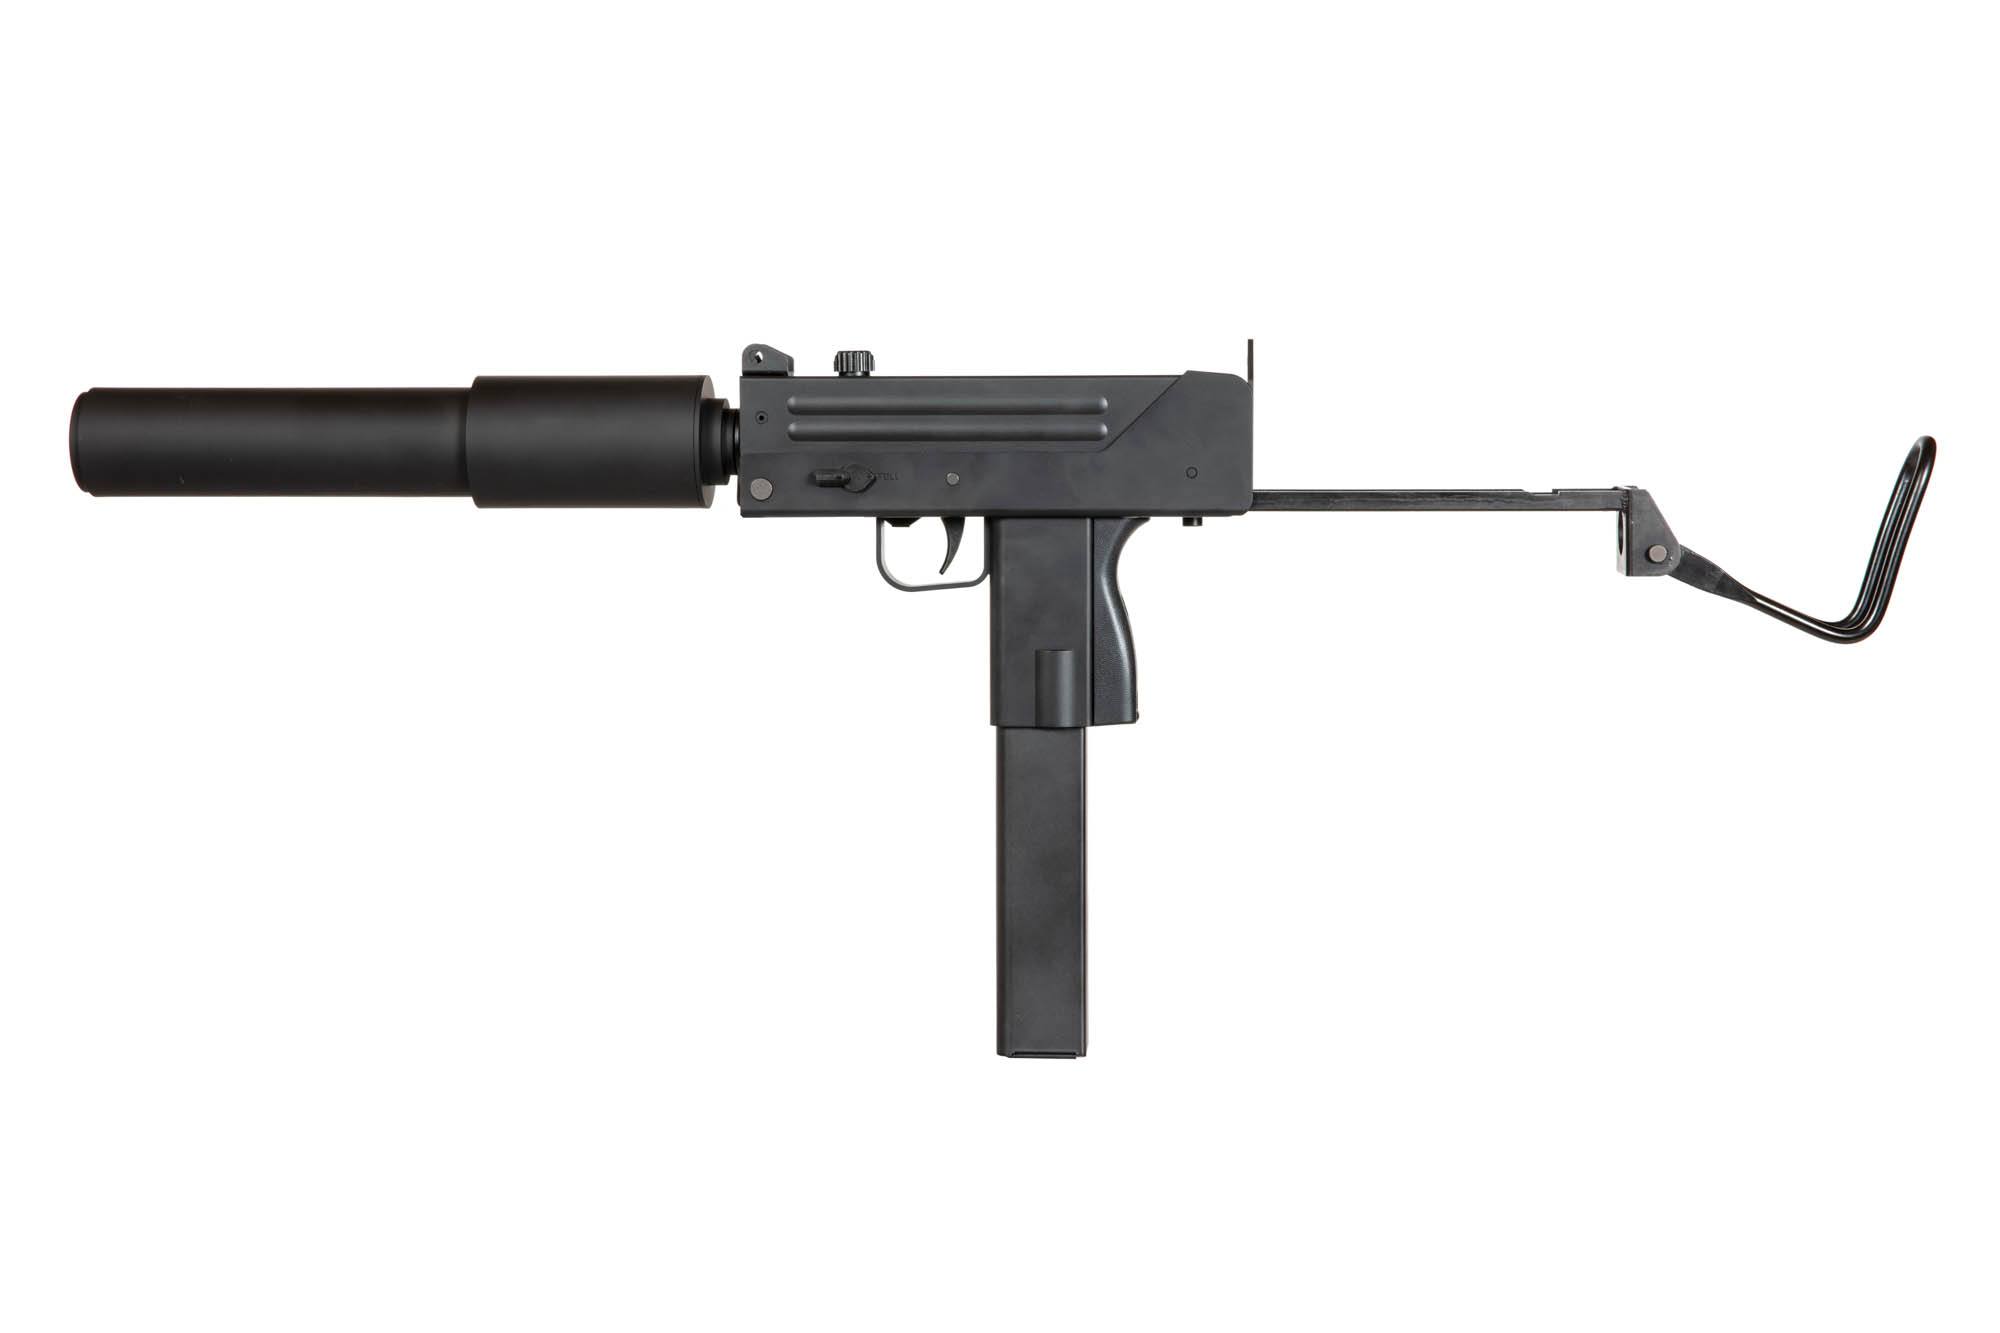 MAC 10 Airsoft Submachine Gun